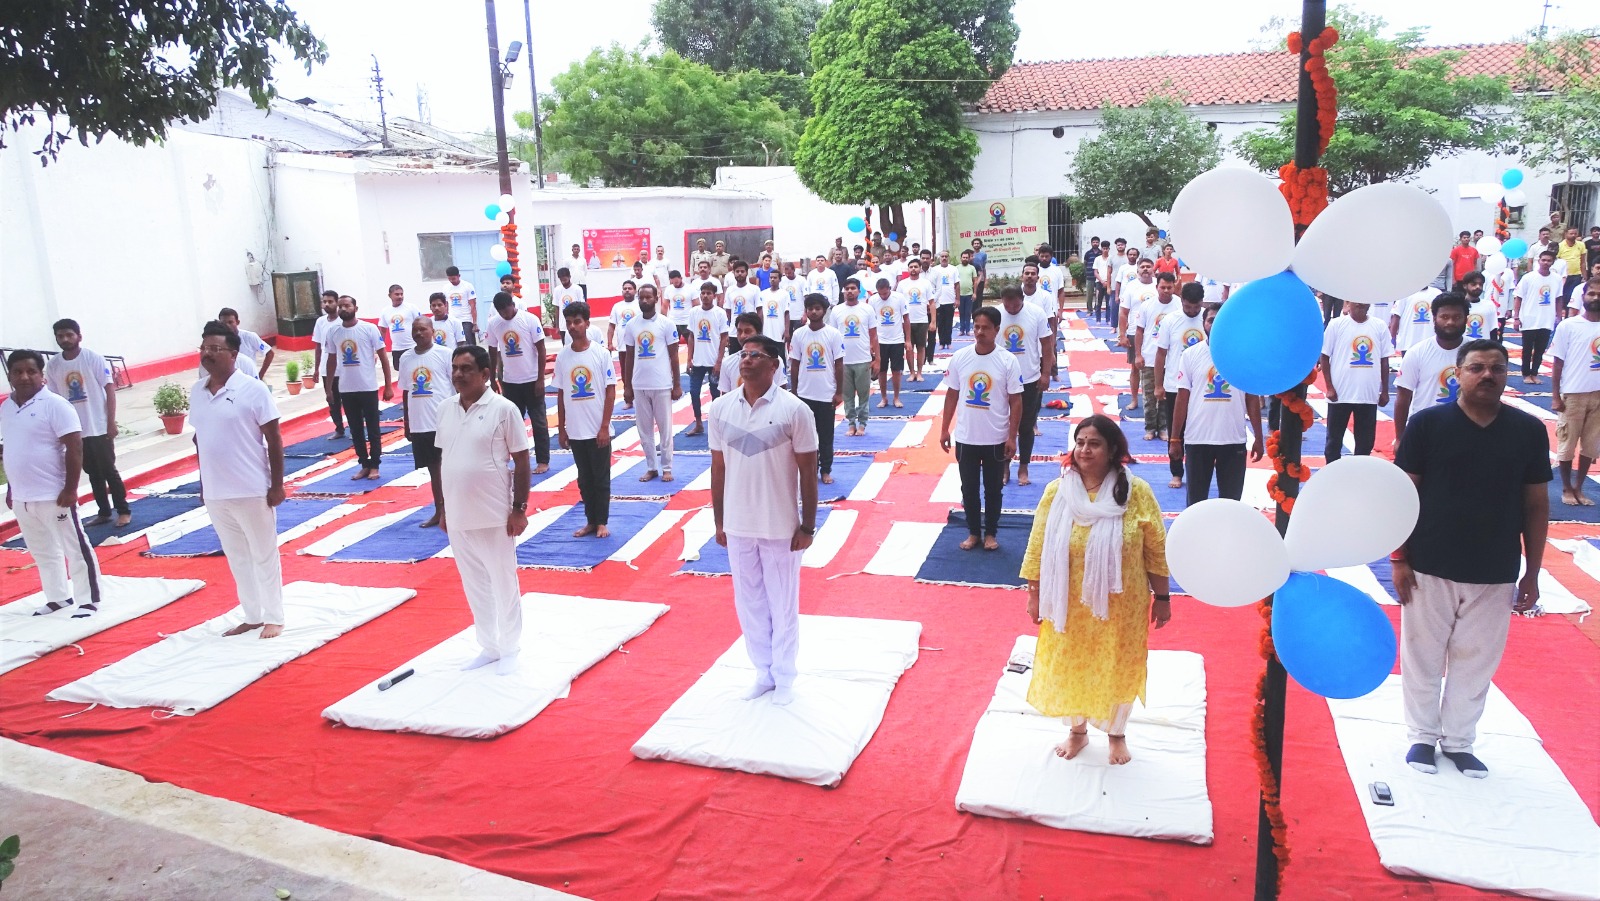 कानपुर:अंतर्राष्ट्रीय योग दिवस के अवसर पर जिला कारागार में मनाया गया योग उत्सव,अधिकारियों और समाजसेवियों संग बंदियों ने किया योगा